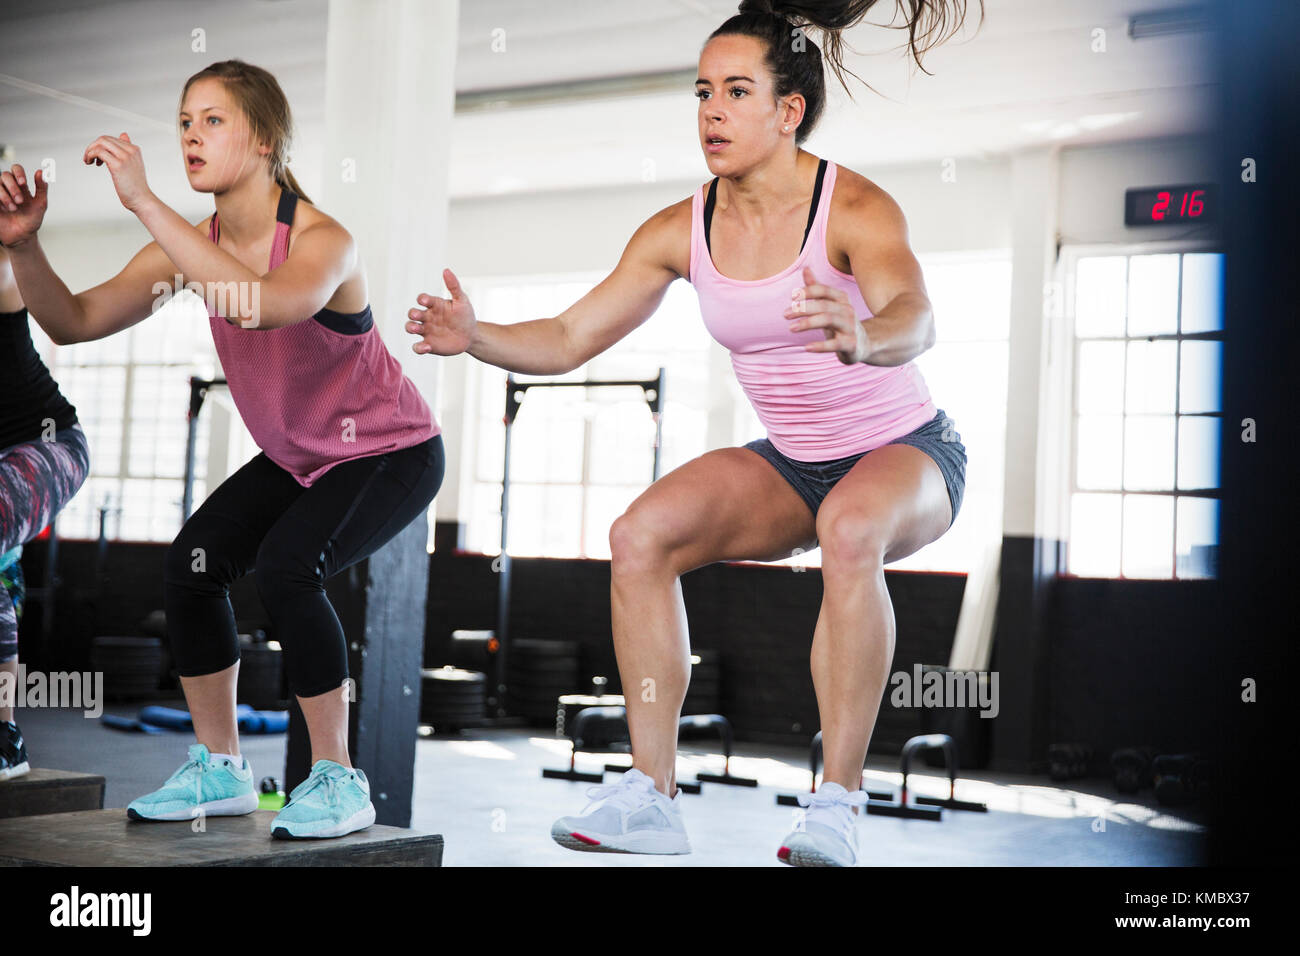 Bestimmte junge Frauen tun Sprung hockt in der Übung Klasse Stockfoto